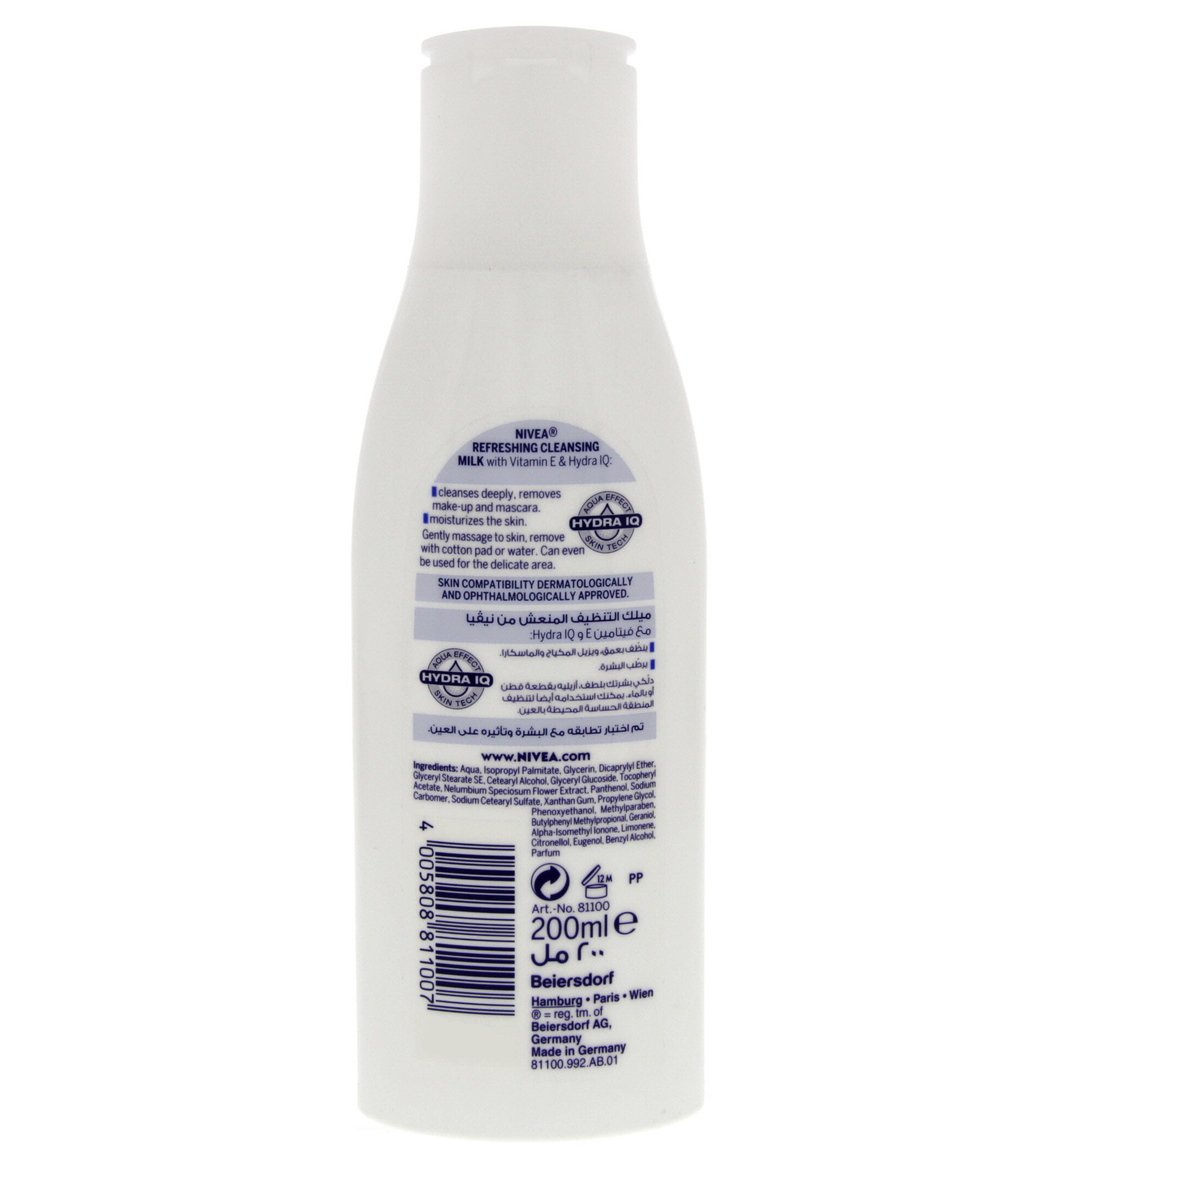 Nivea Refreshing Cleansing Milk 200 ml